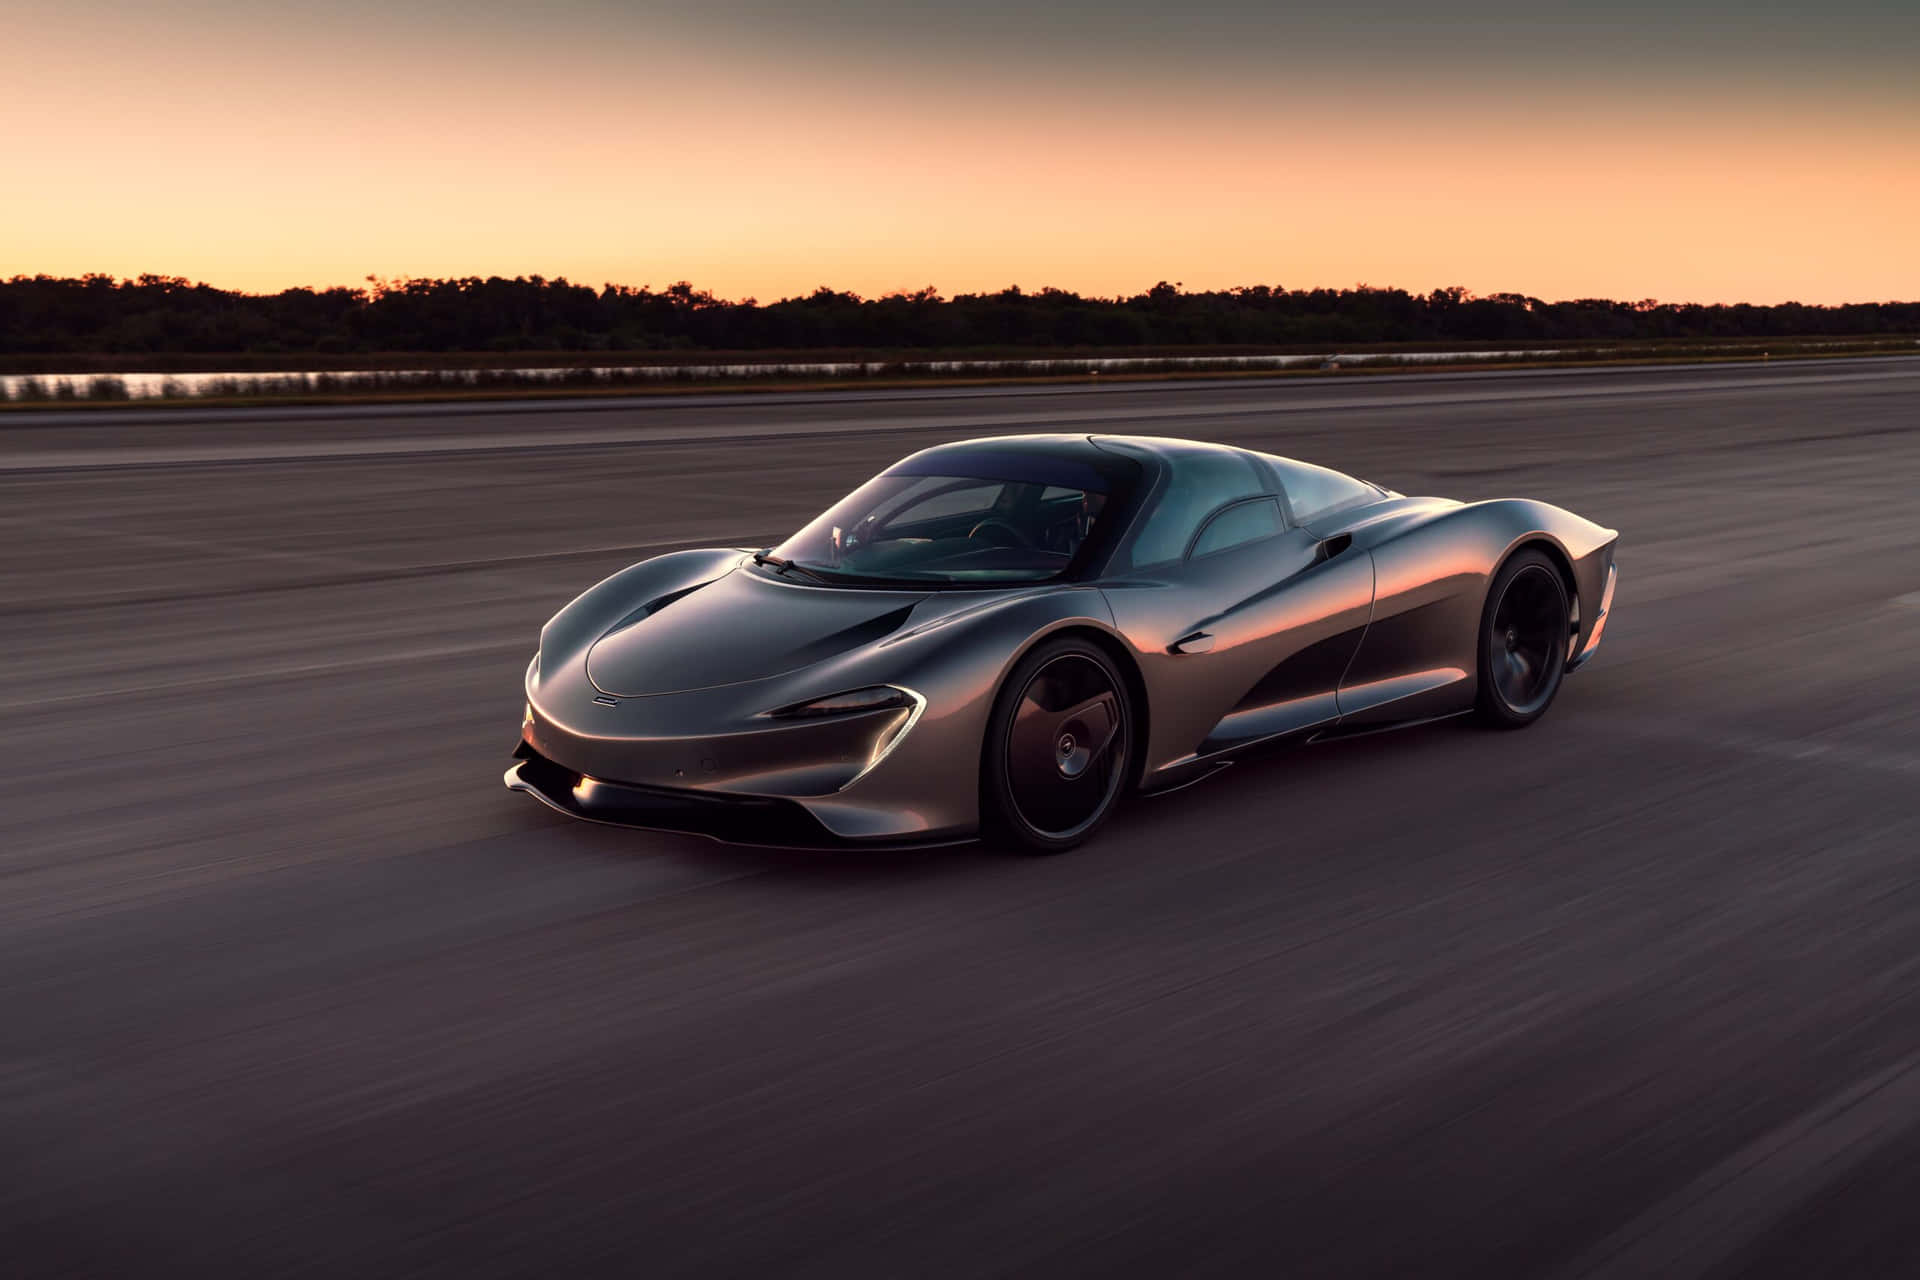 Captain: A stunning McLaren sports car showcased against a picturesque landscape.